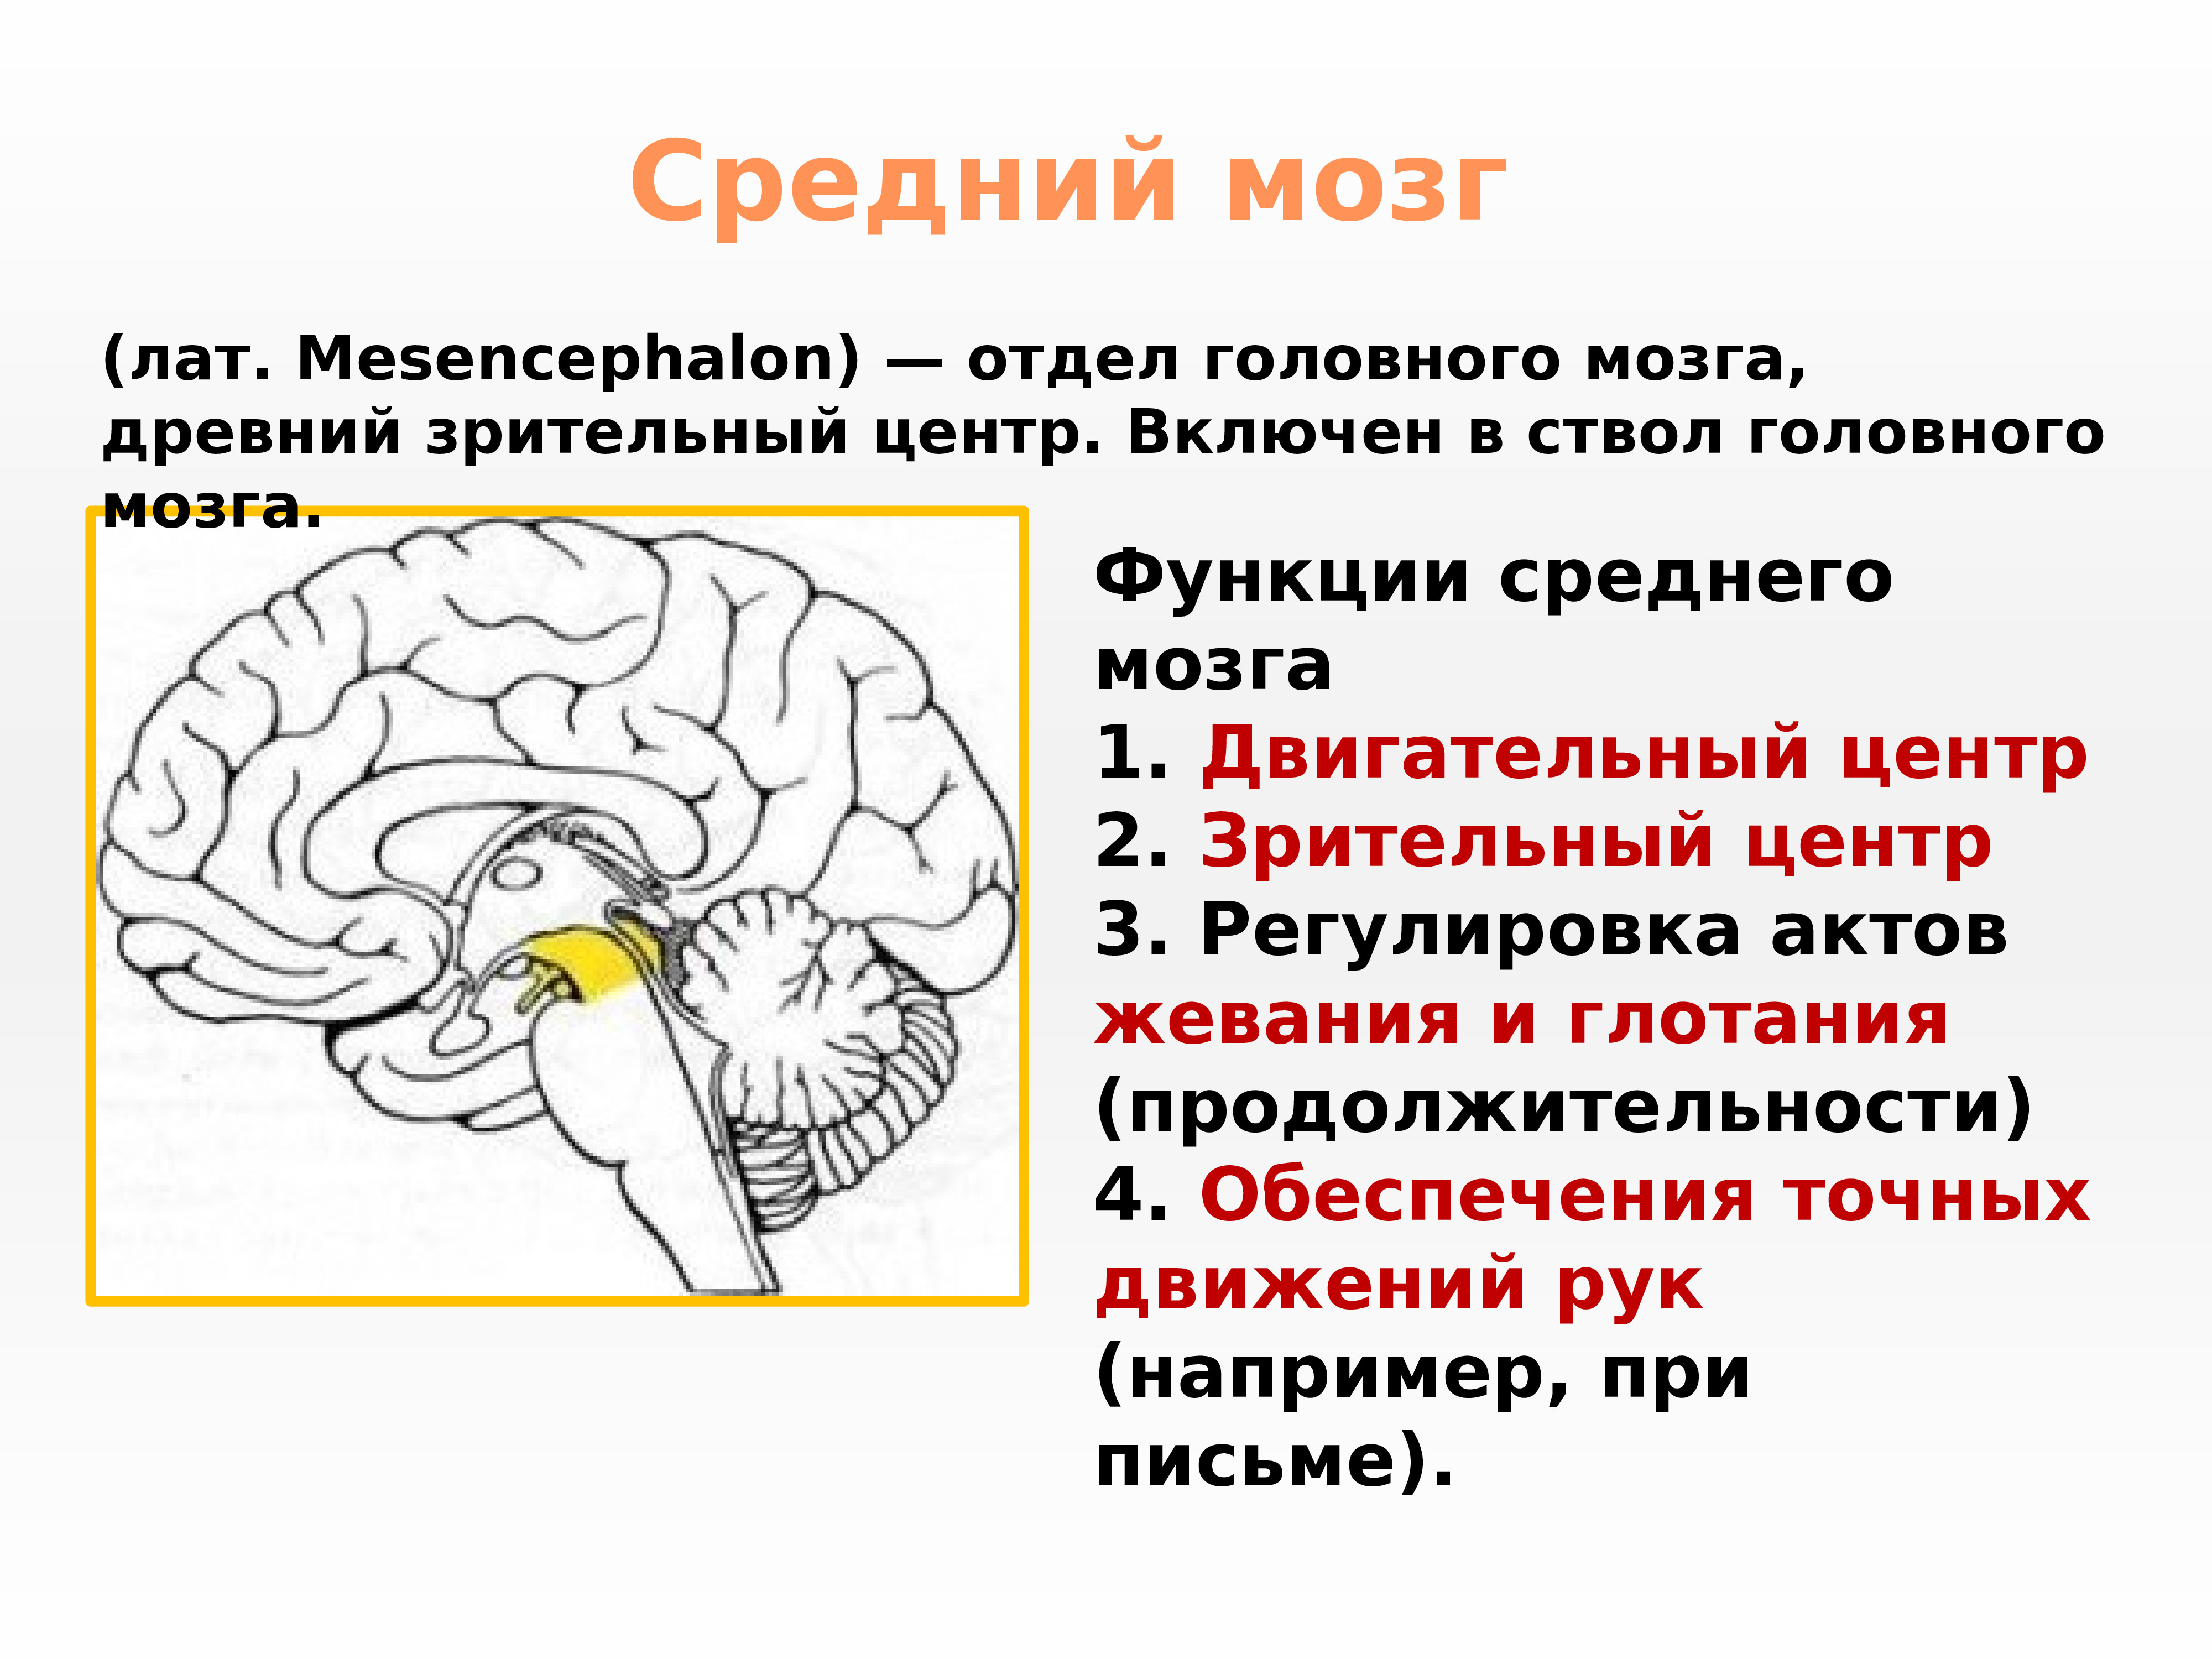 Сколько весит средний мозг. Основные центры среднего мозга. Строение и функции среднего мозга. Средний мозг строение структура функции. Функции нервных центров среднего мозга.